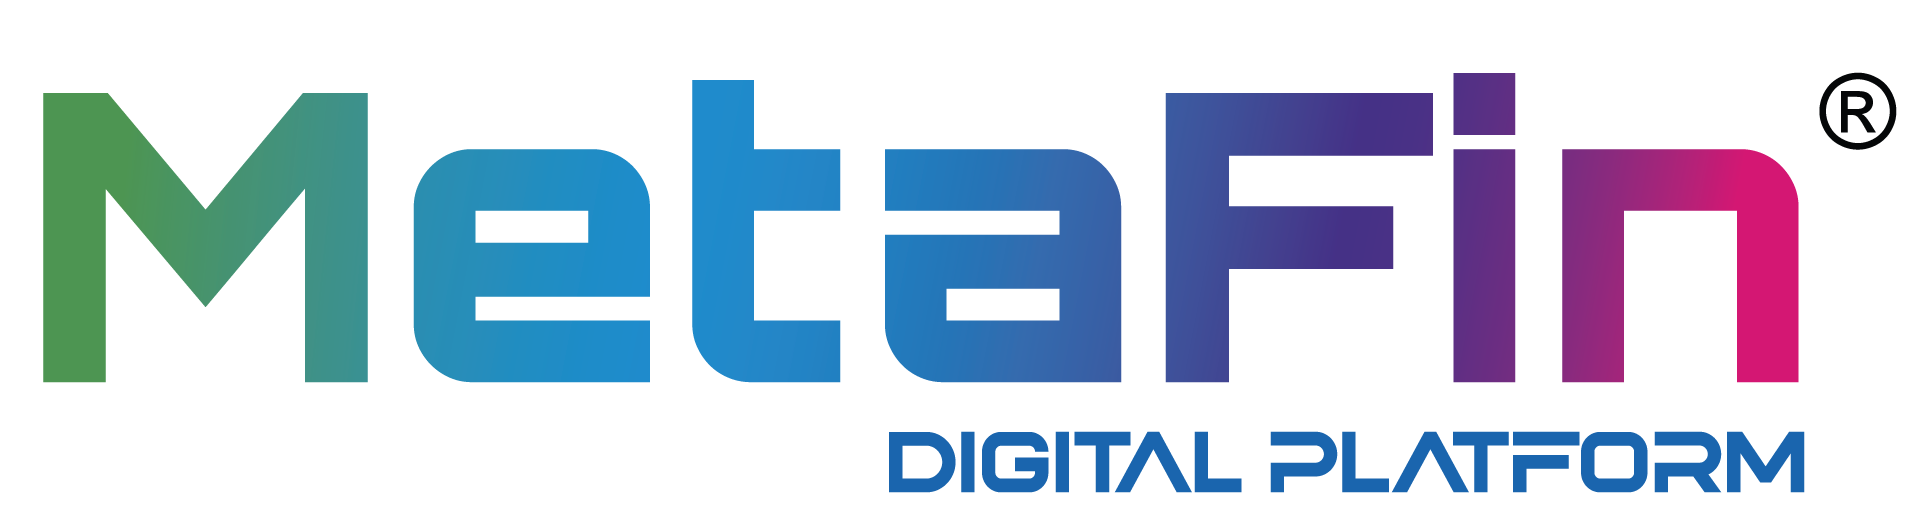 MetaFin Digital Platform Logo